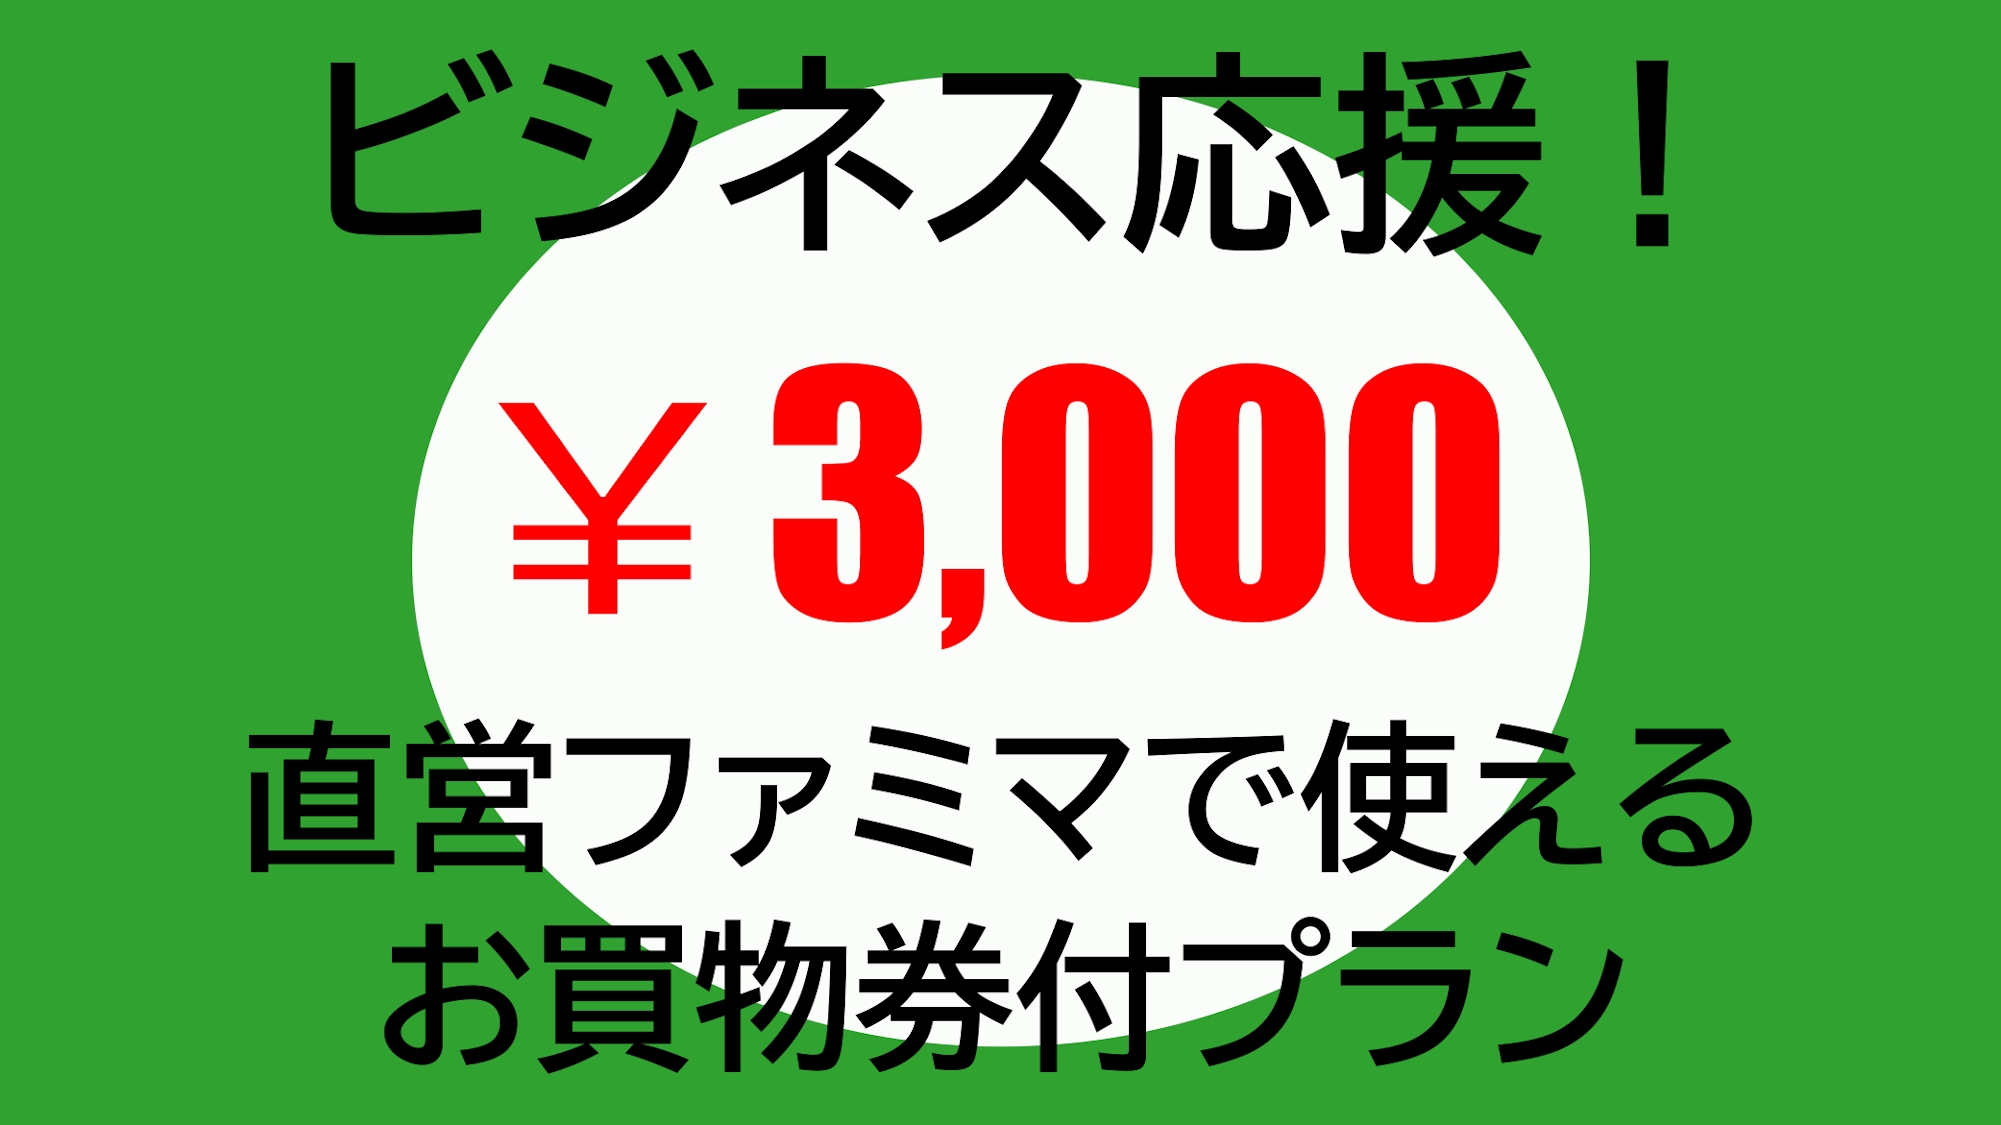 【出張応援】直営ファミマで使える3000円お買物券付プラン